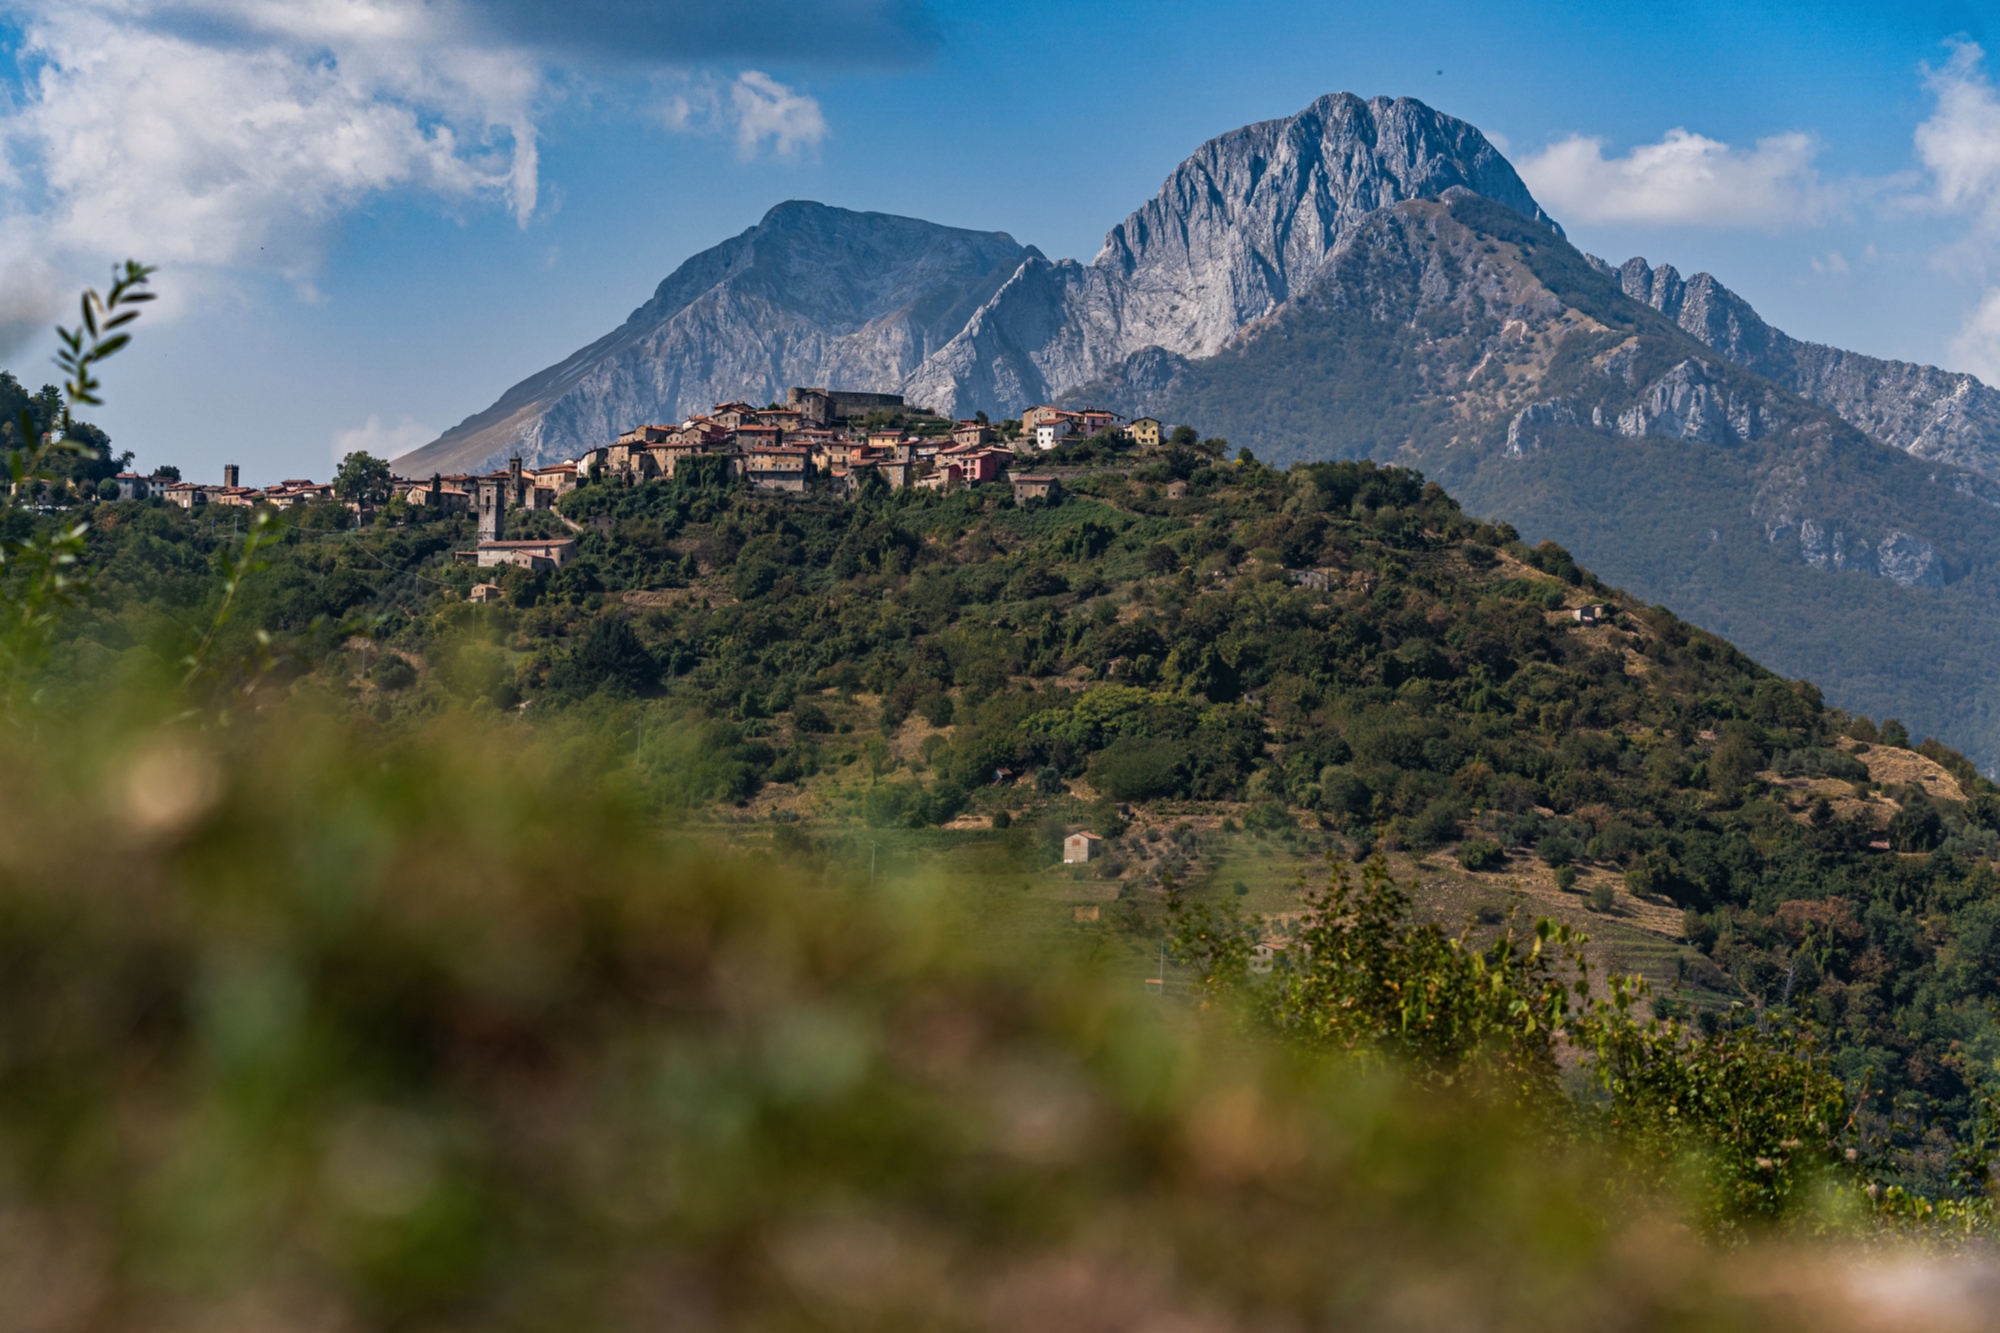 Rocca di Trassilico